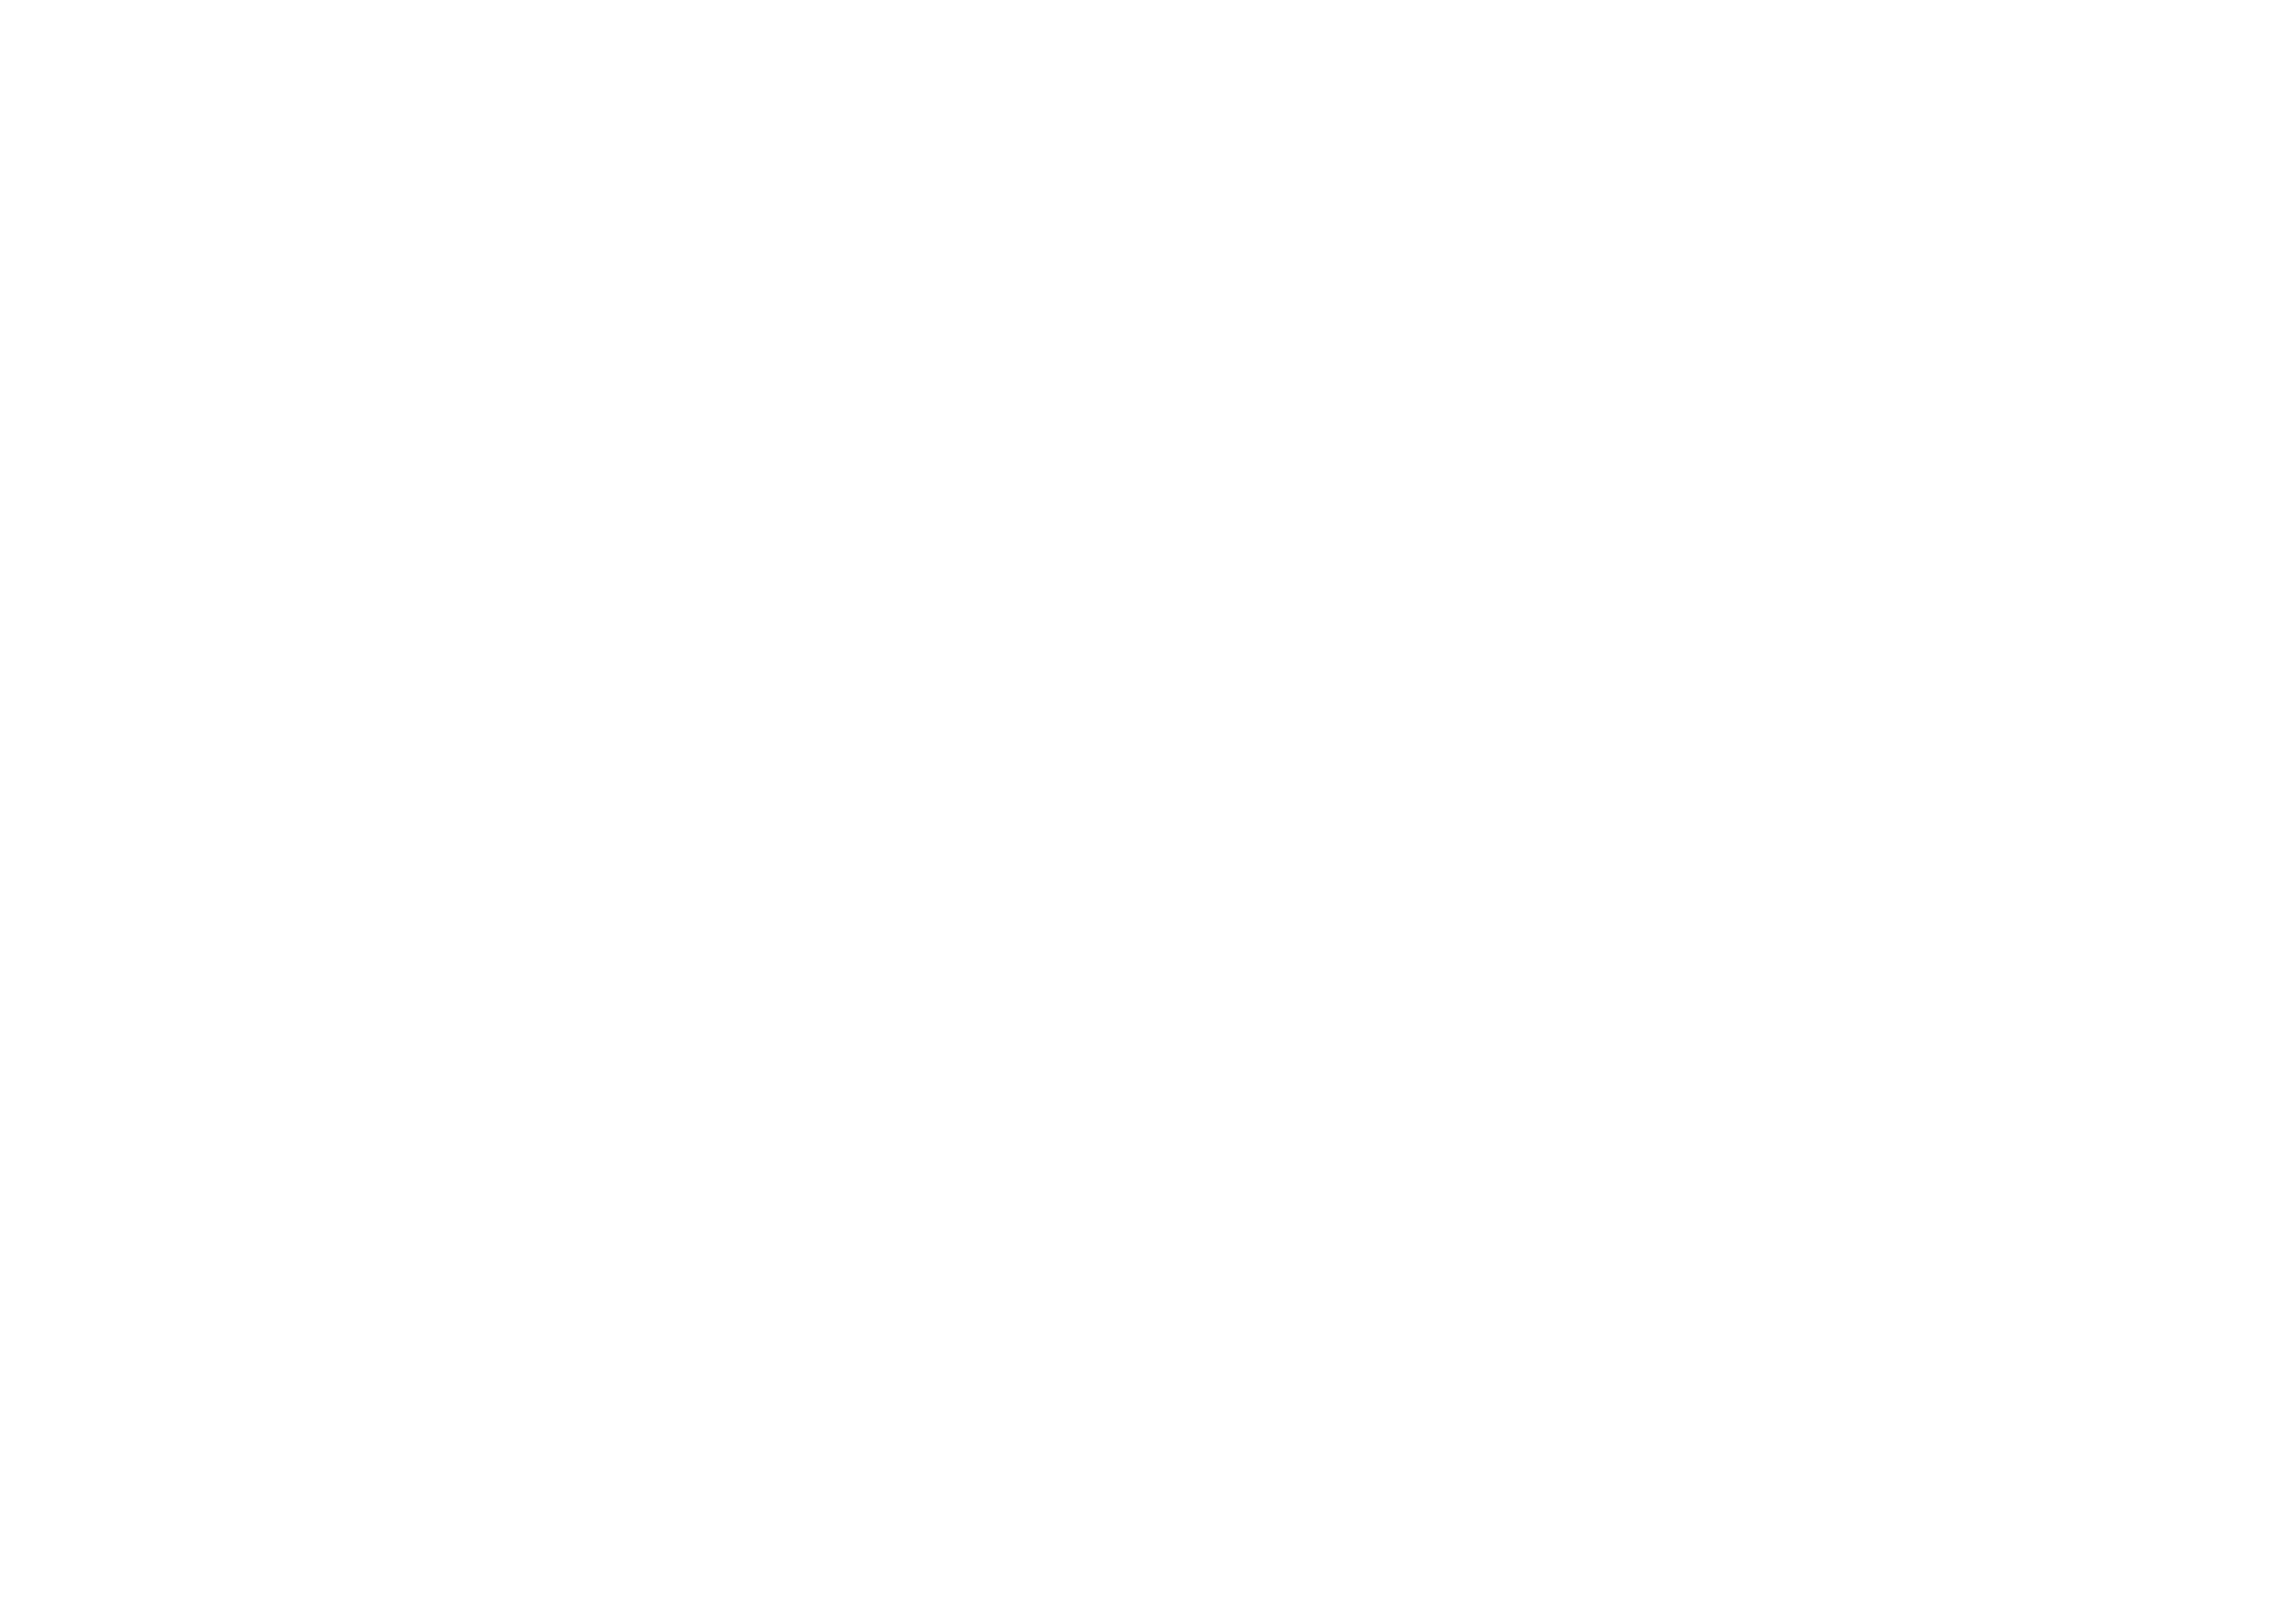 The Narrow - Gordon Ramsay